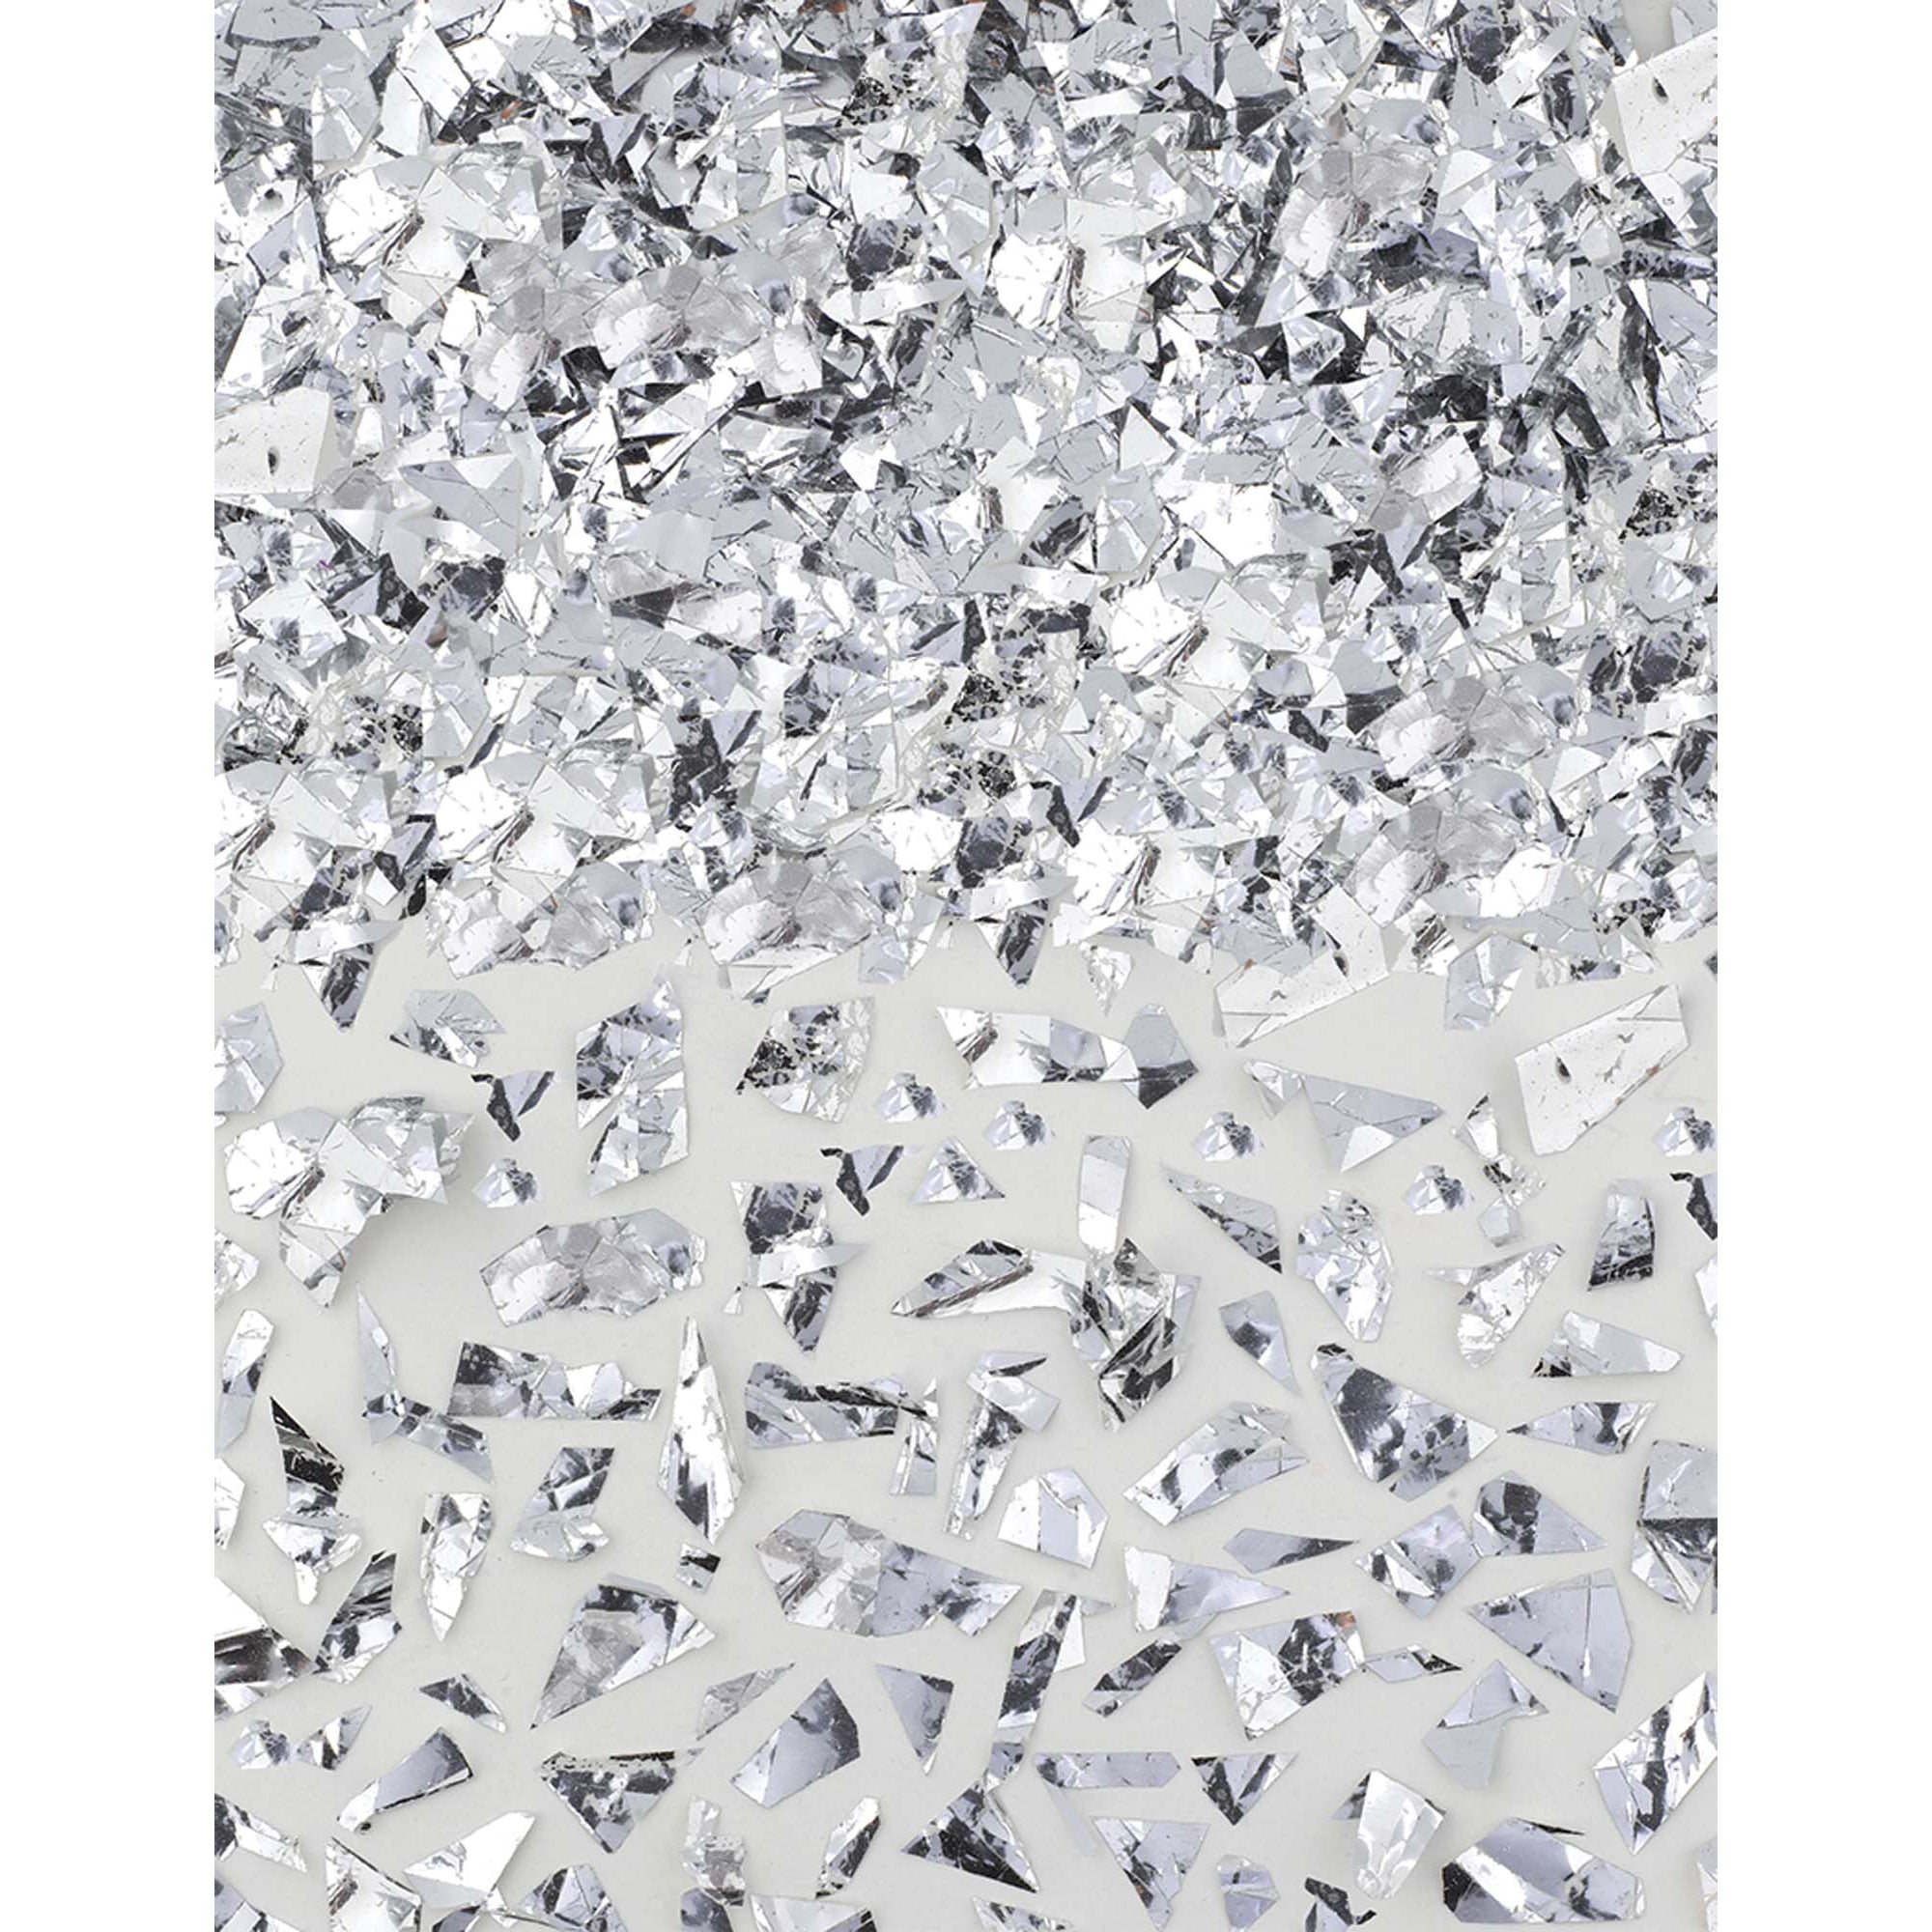 Silver Sparkle Foil Shred Confetti 1.5oz